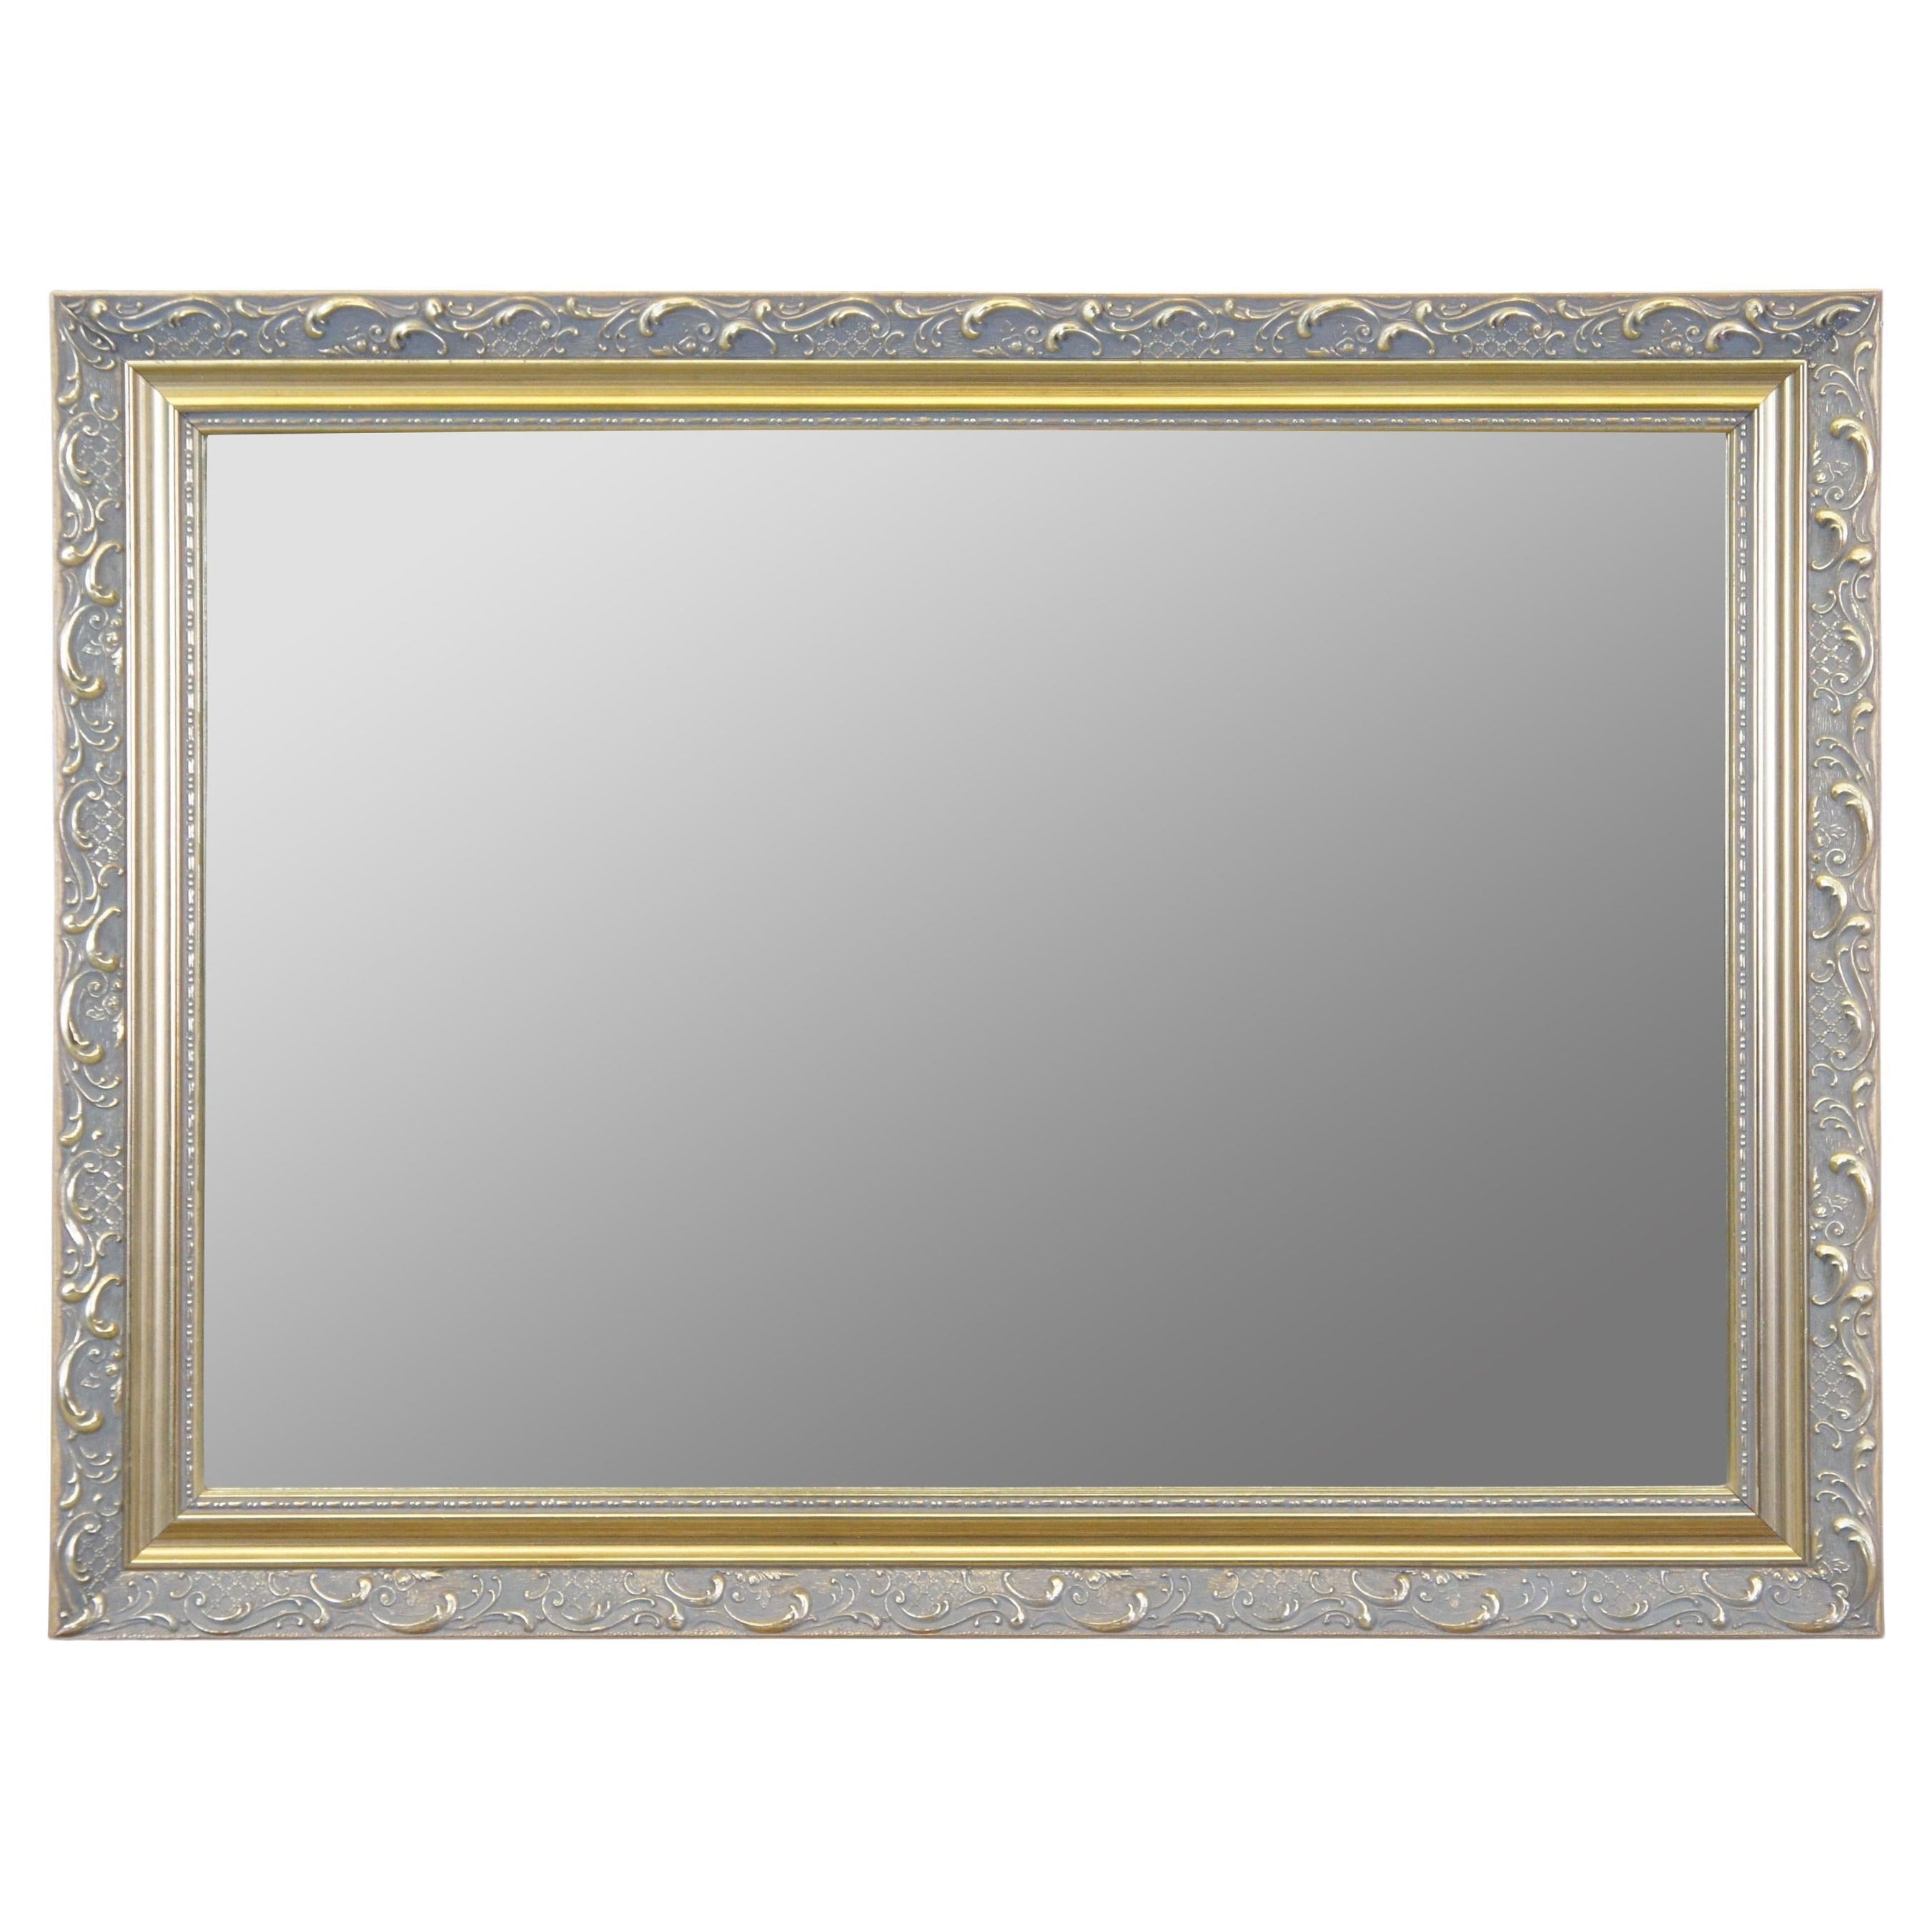 Carolina Mirror Company - Miroir mural rectangulaire en verre biseauté or sur cheminée